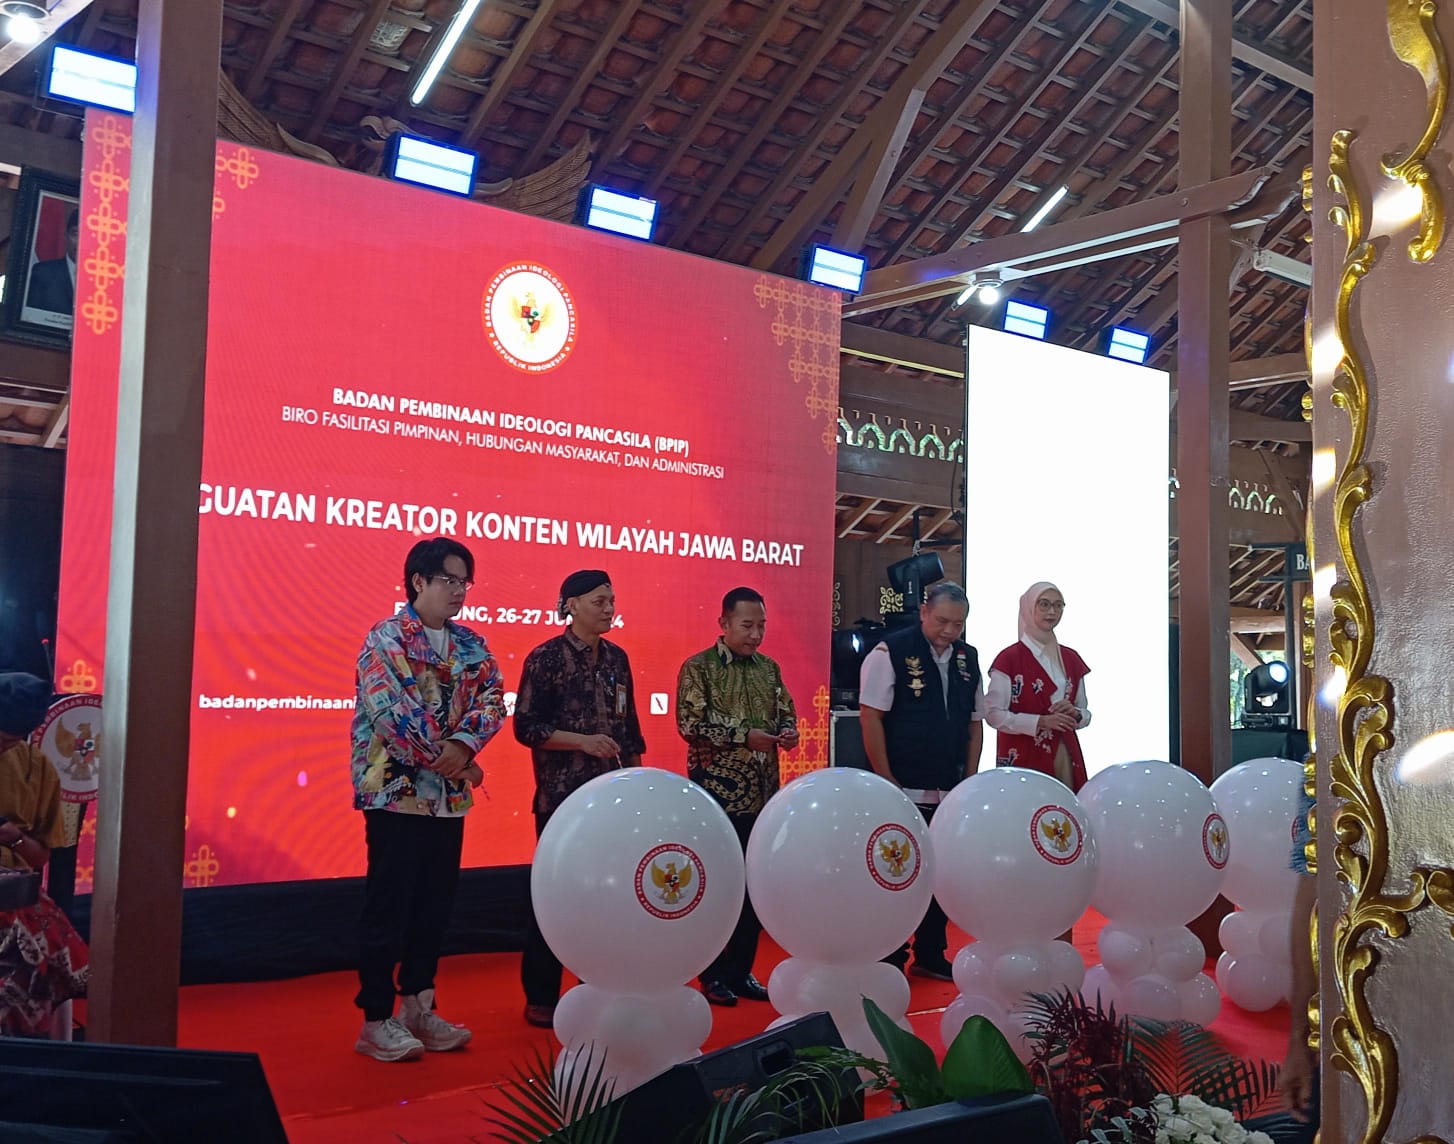 BPIP Gelar Workshop Penguatan Konten Kreator di Bandung, Dorong Narasi Pancasila di Media Sosial